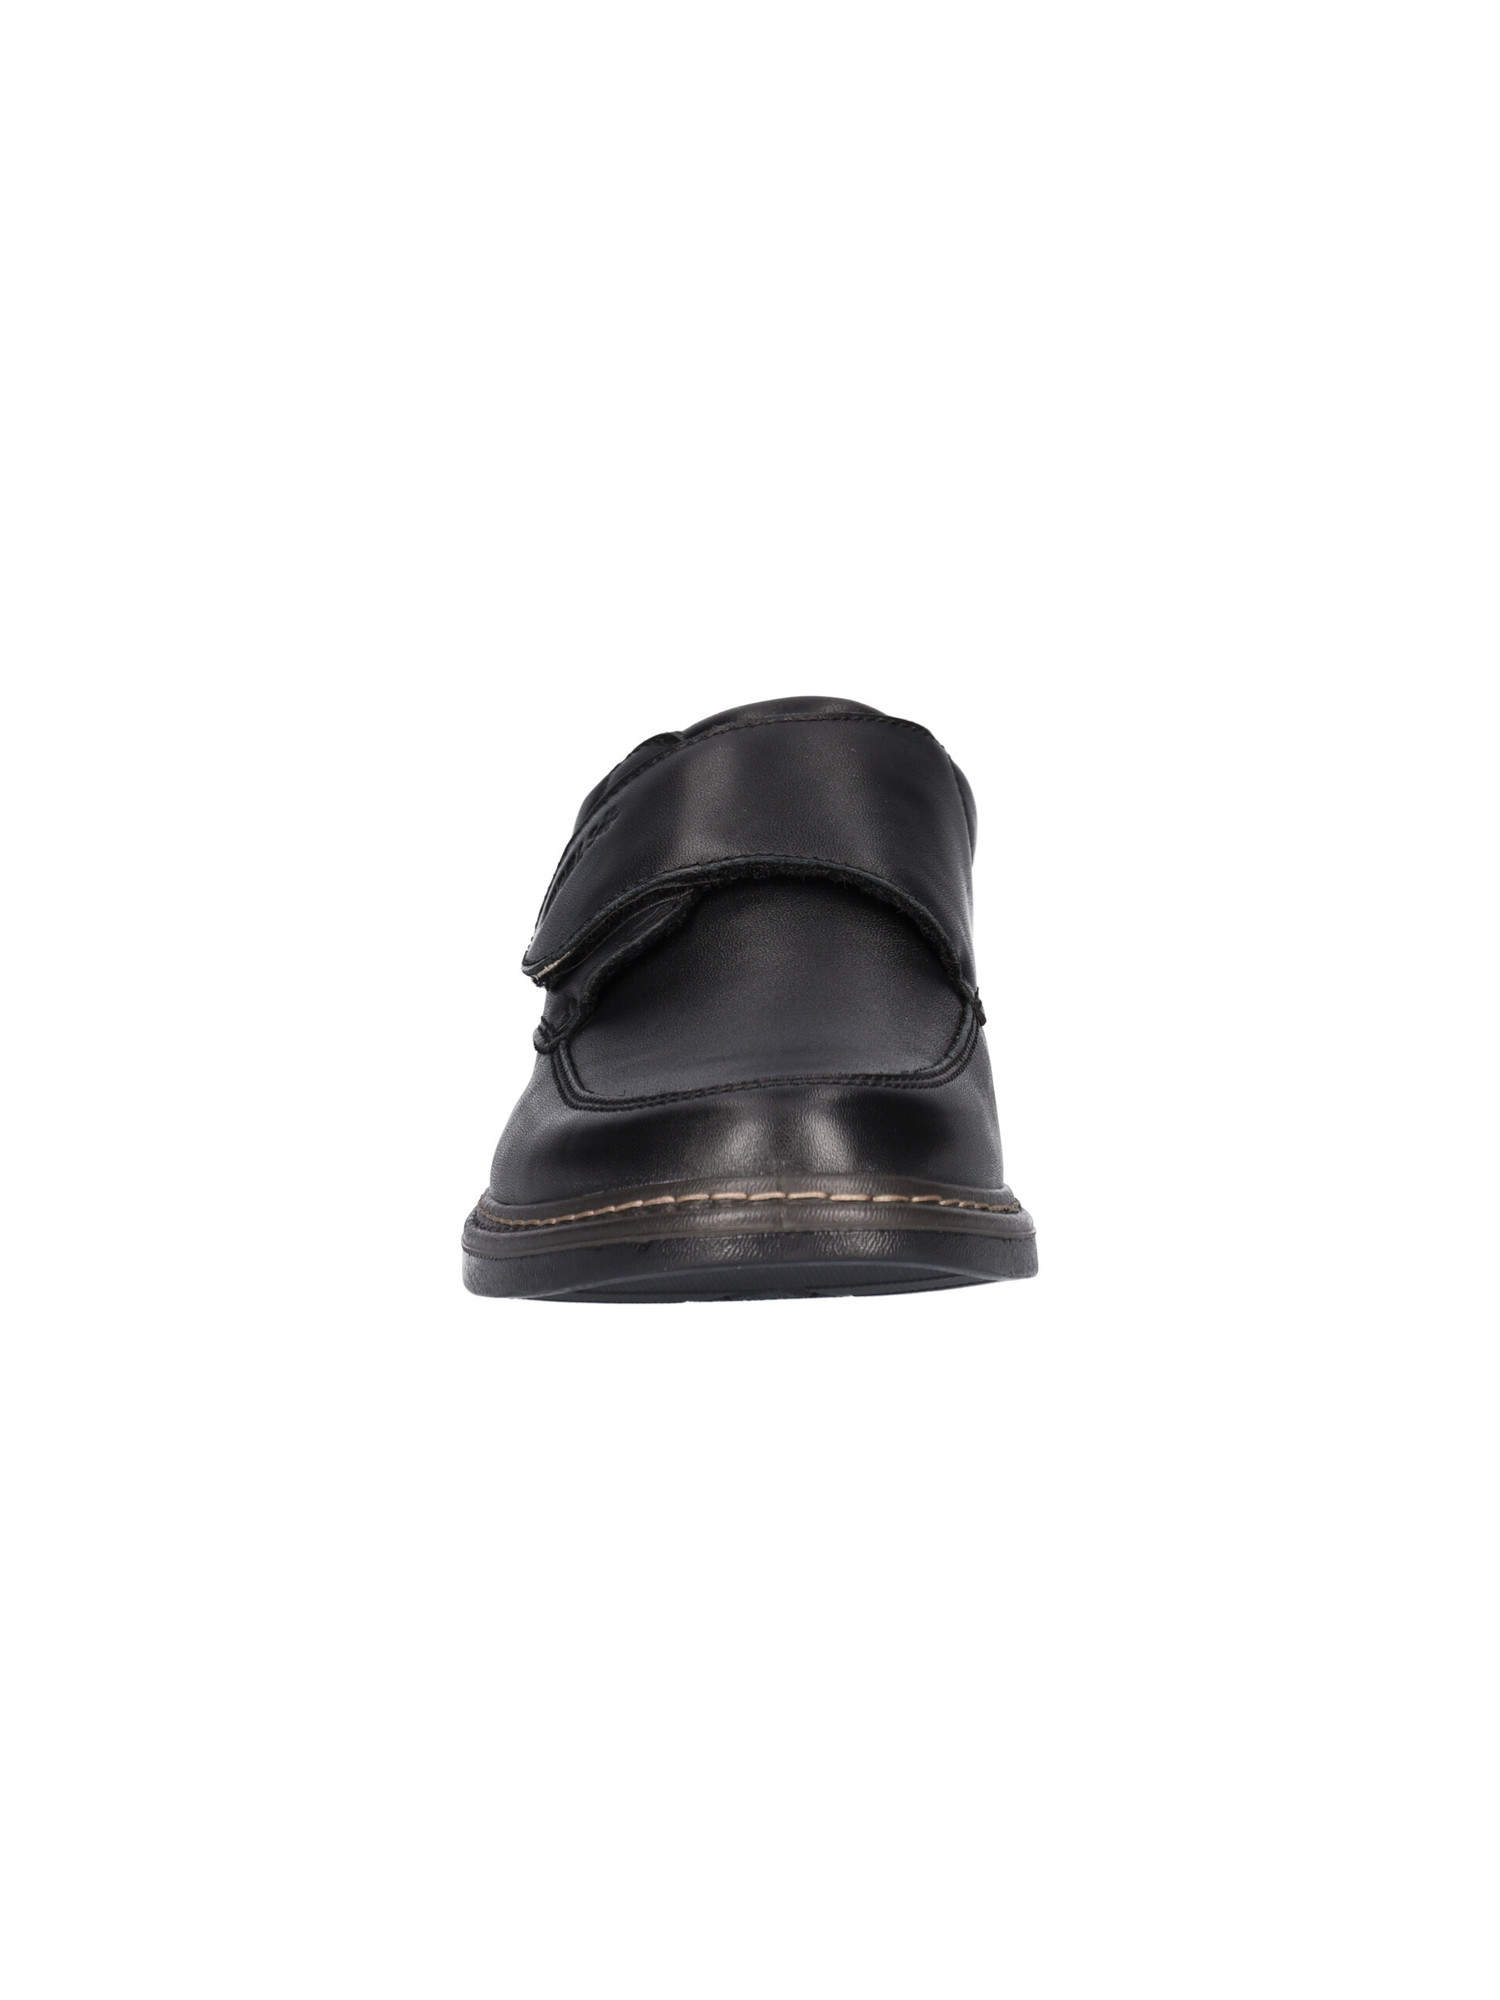 scarpa-casual-enval-soft-da-uomo-nera-5603ca